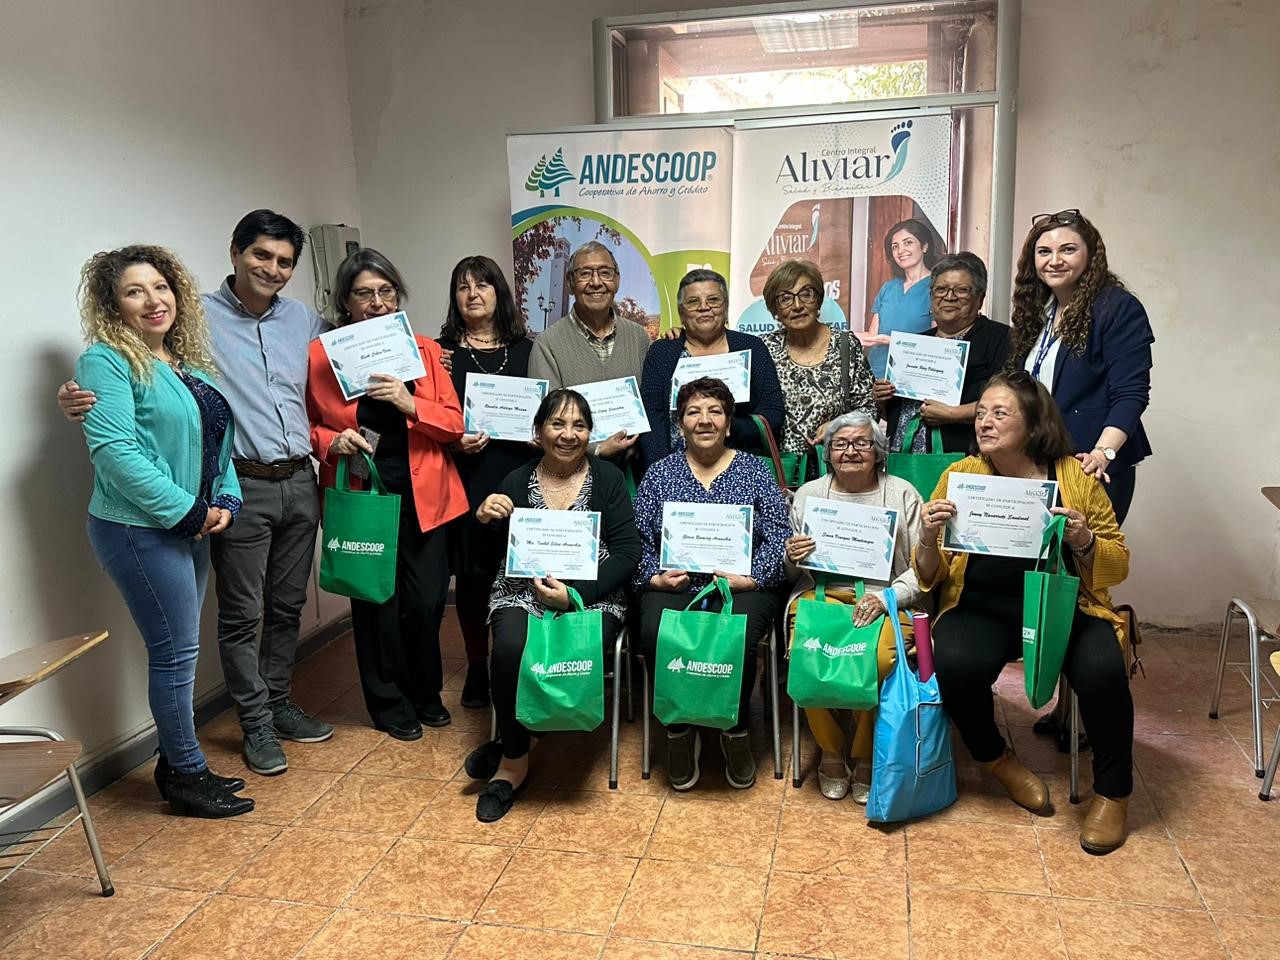 LOS ANDES: Adultos Mayores participan en taller formativo impulsado por Cooperativa Andescoop en alianza con Centro Integral Aliviar